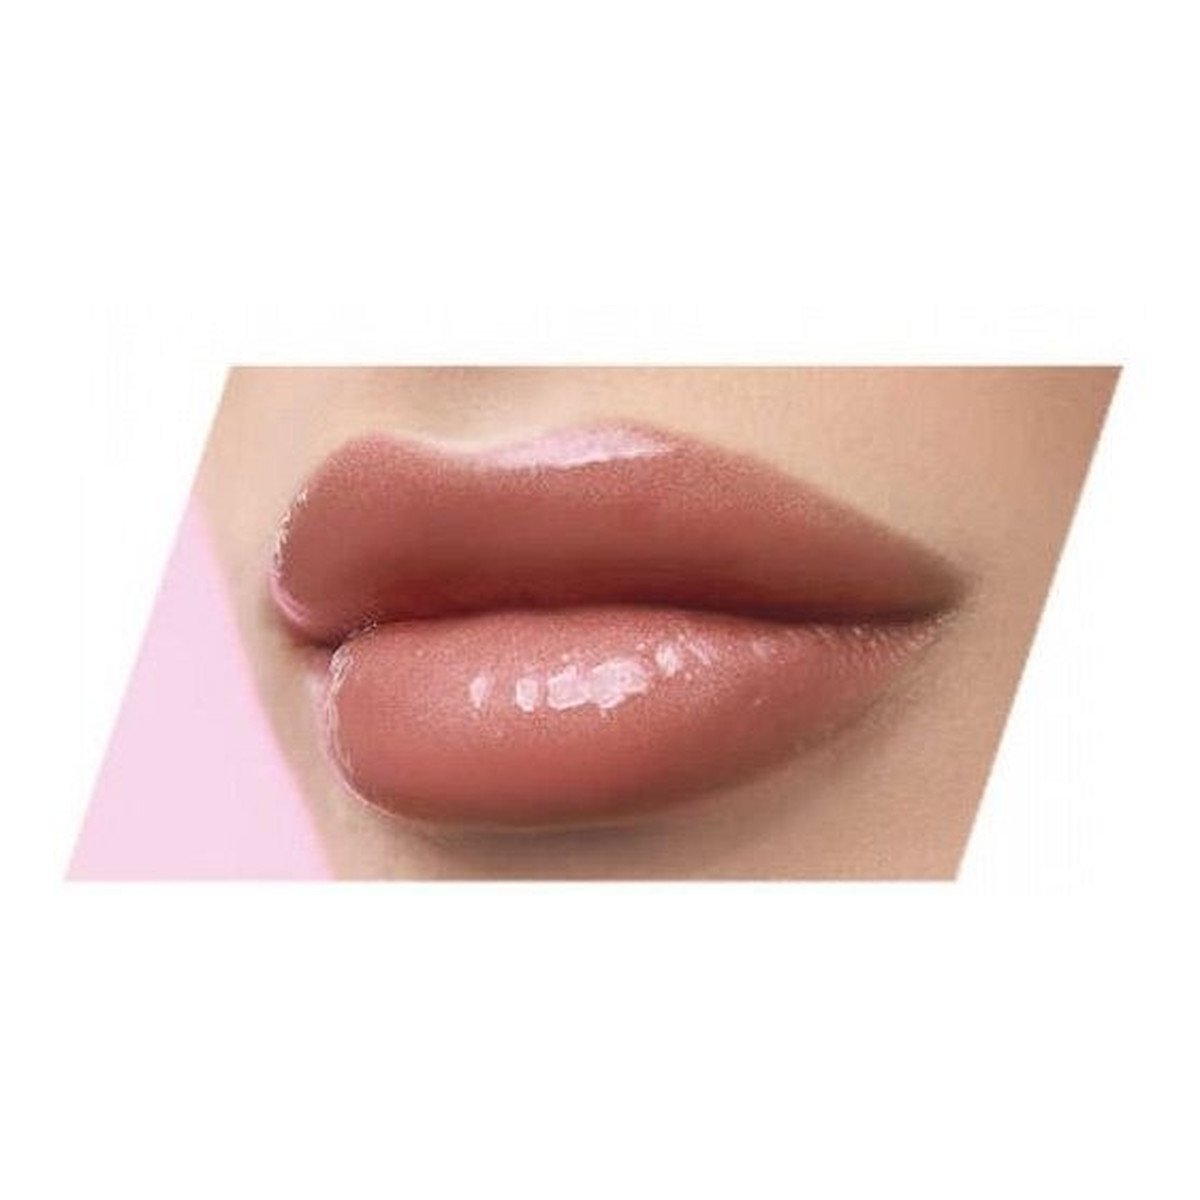 Golden Rose Plumped Lips Lip Plumping Gloss Błyszczyk optycznie powiększający usta 4.7ml